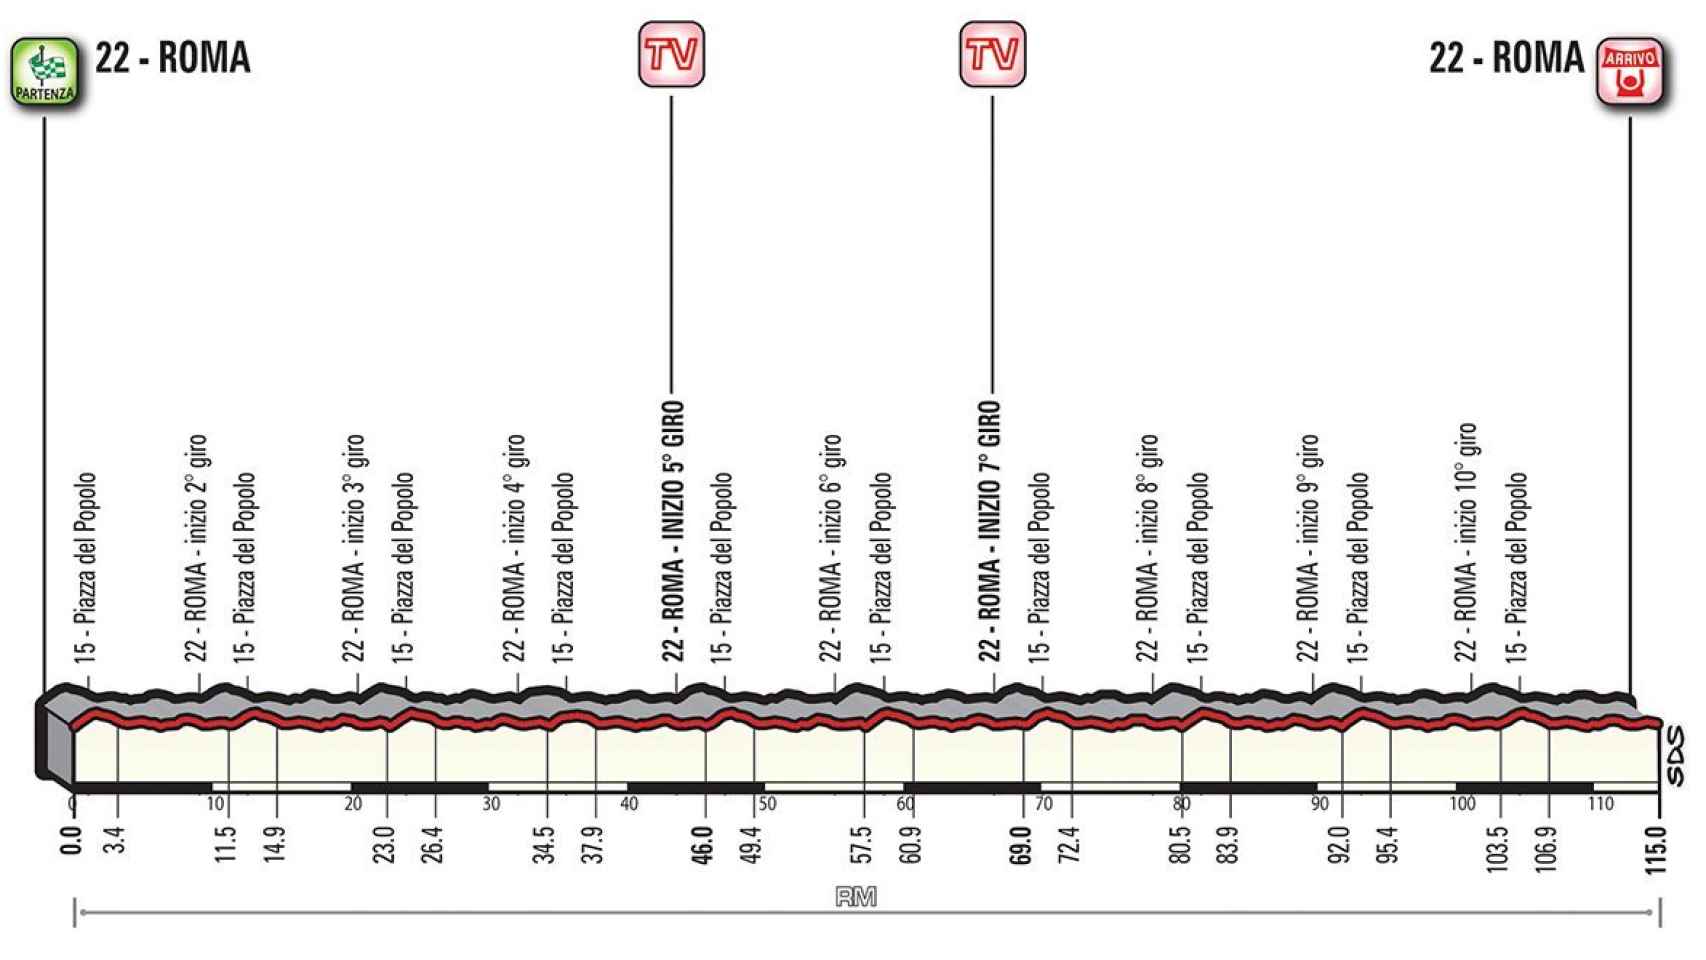 Perfil de la 21ª etapa del Giro de Italia.